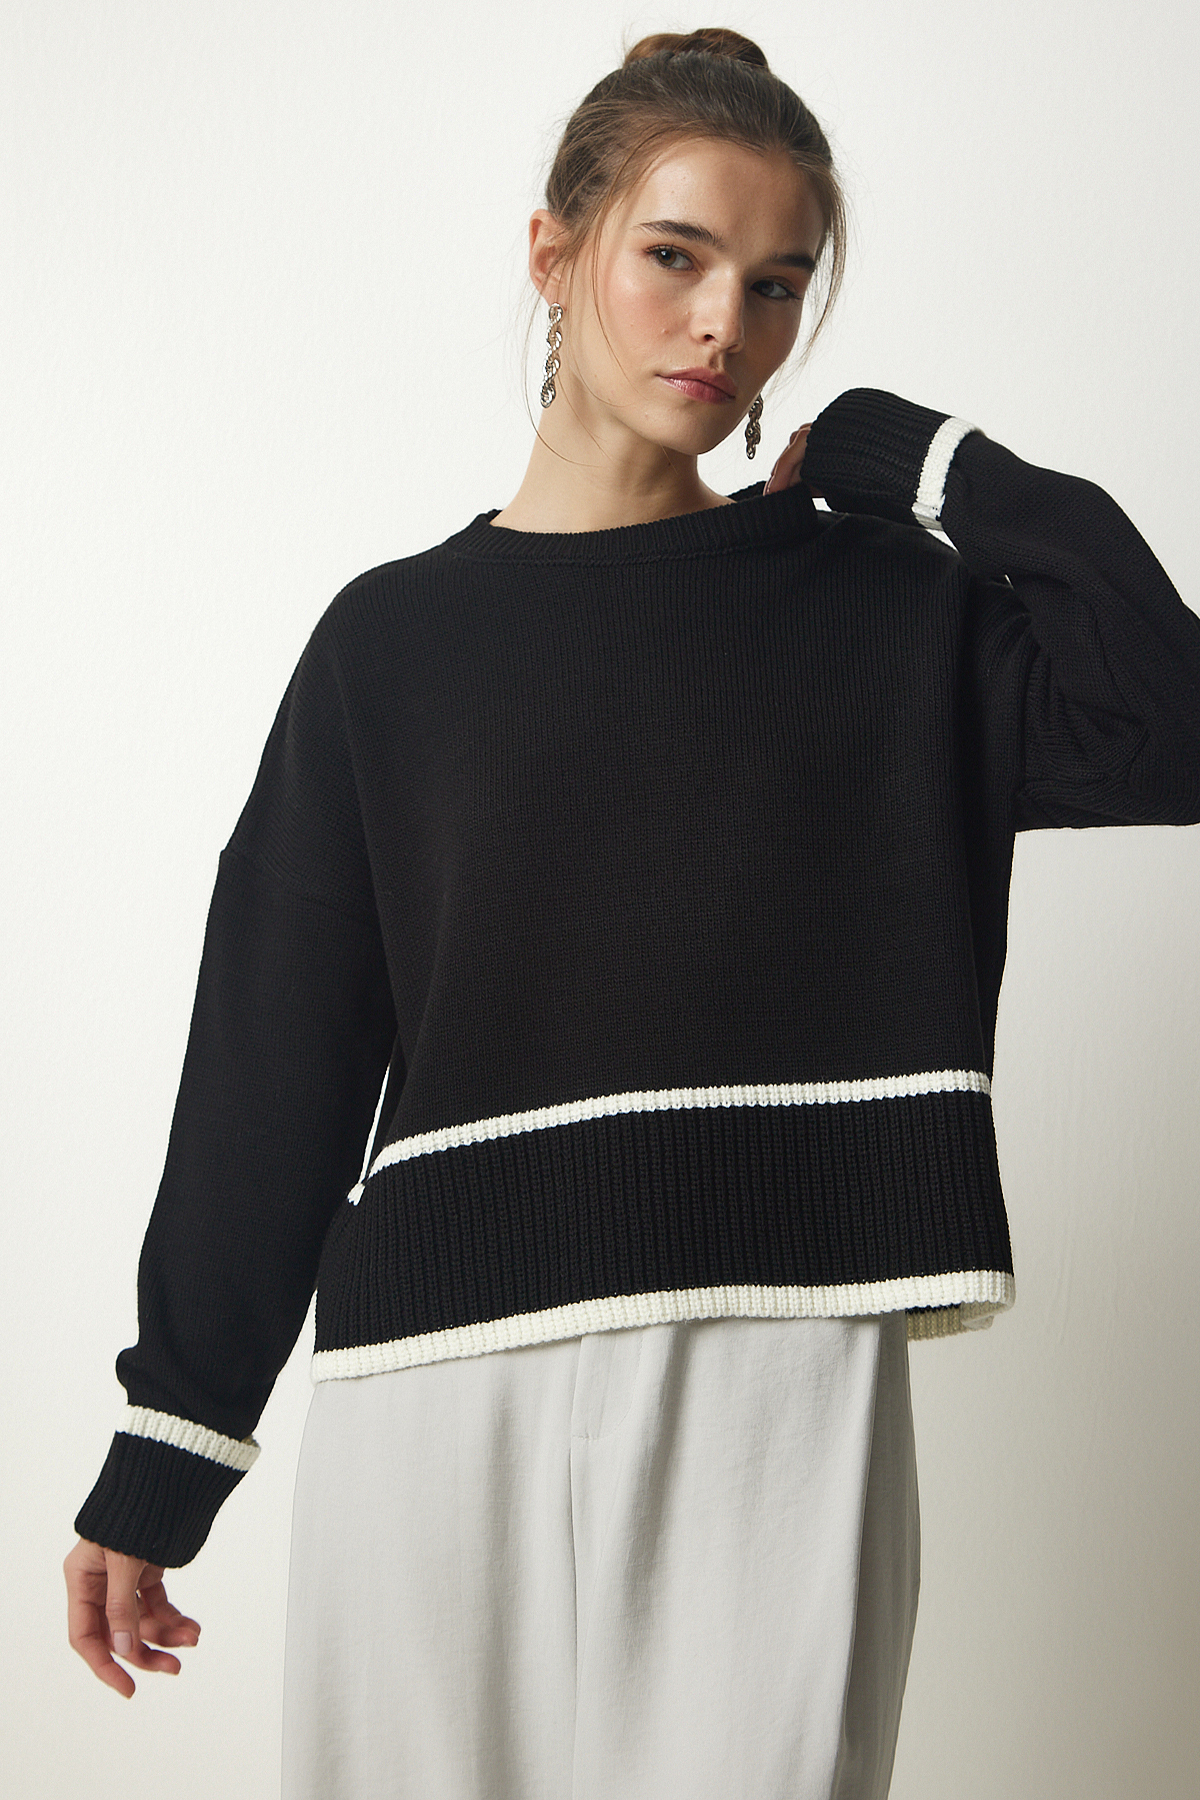 Levně Happiness İstanbul Women's Black Stripe Detailed Knitwear Sweater